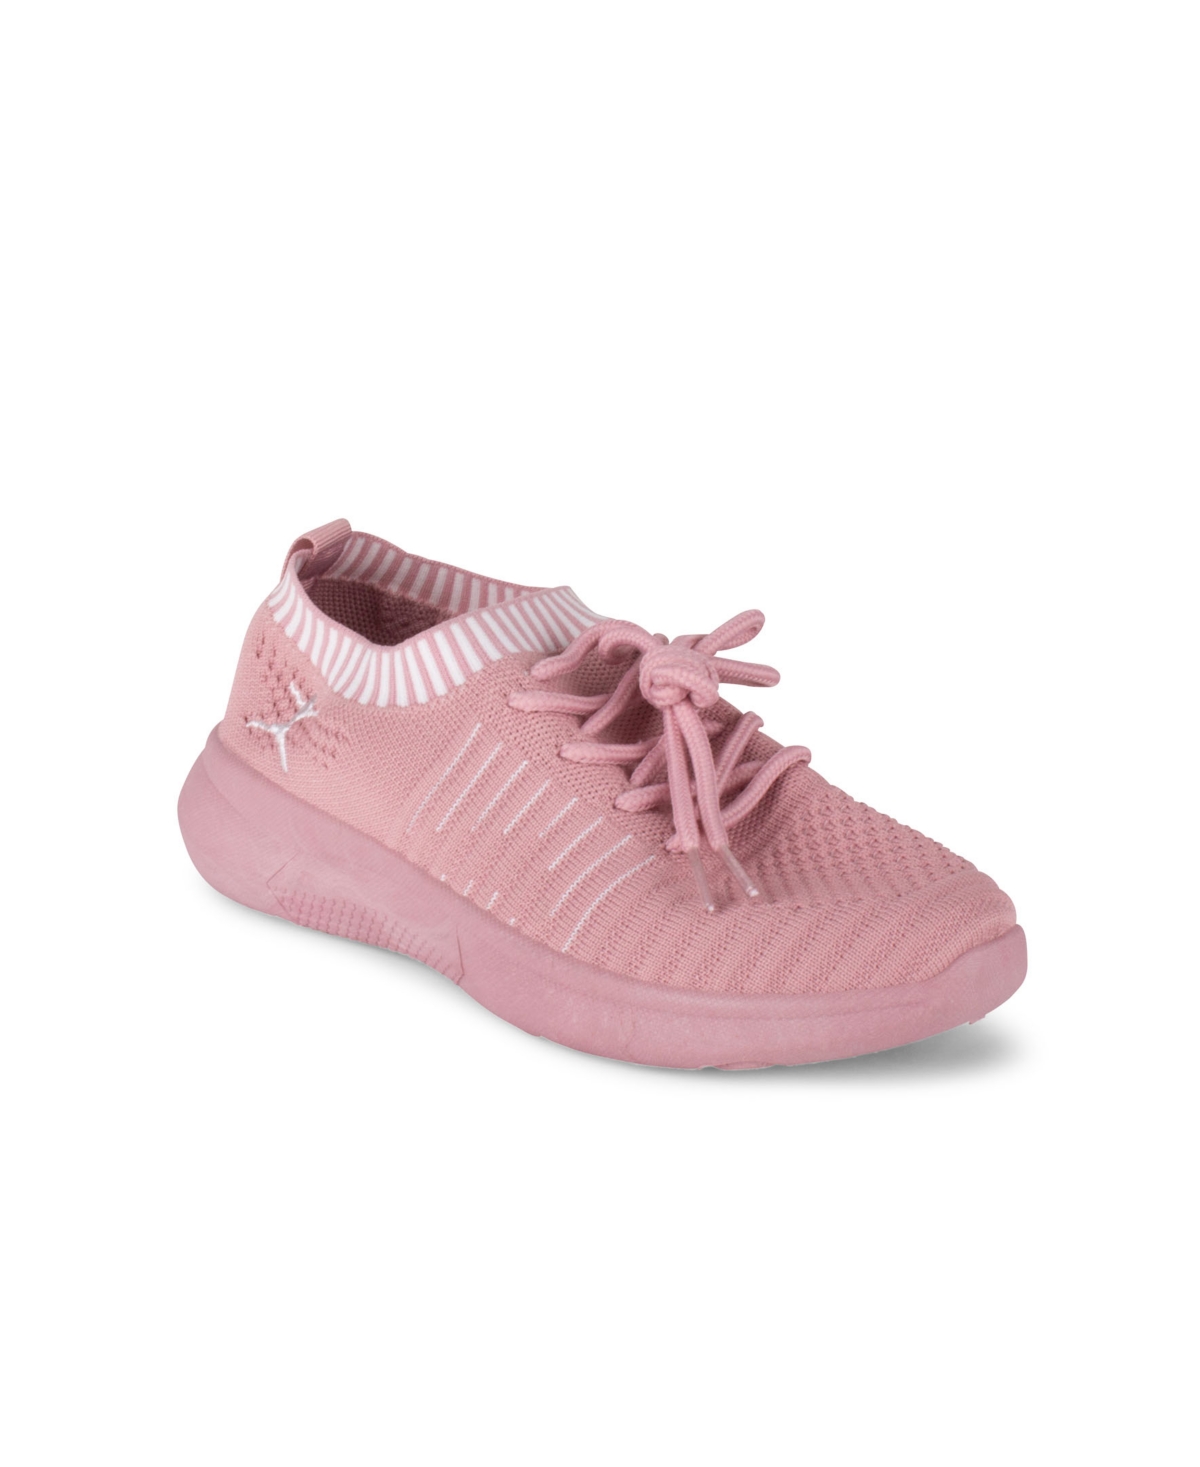 Danskin Women's Energy Lace-up Sneaker Women's Shoes